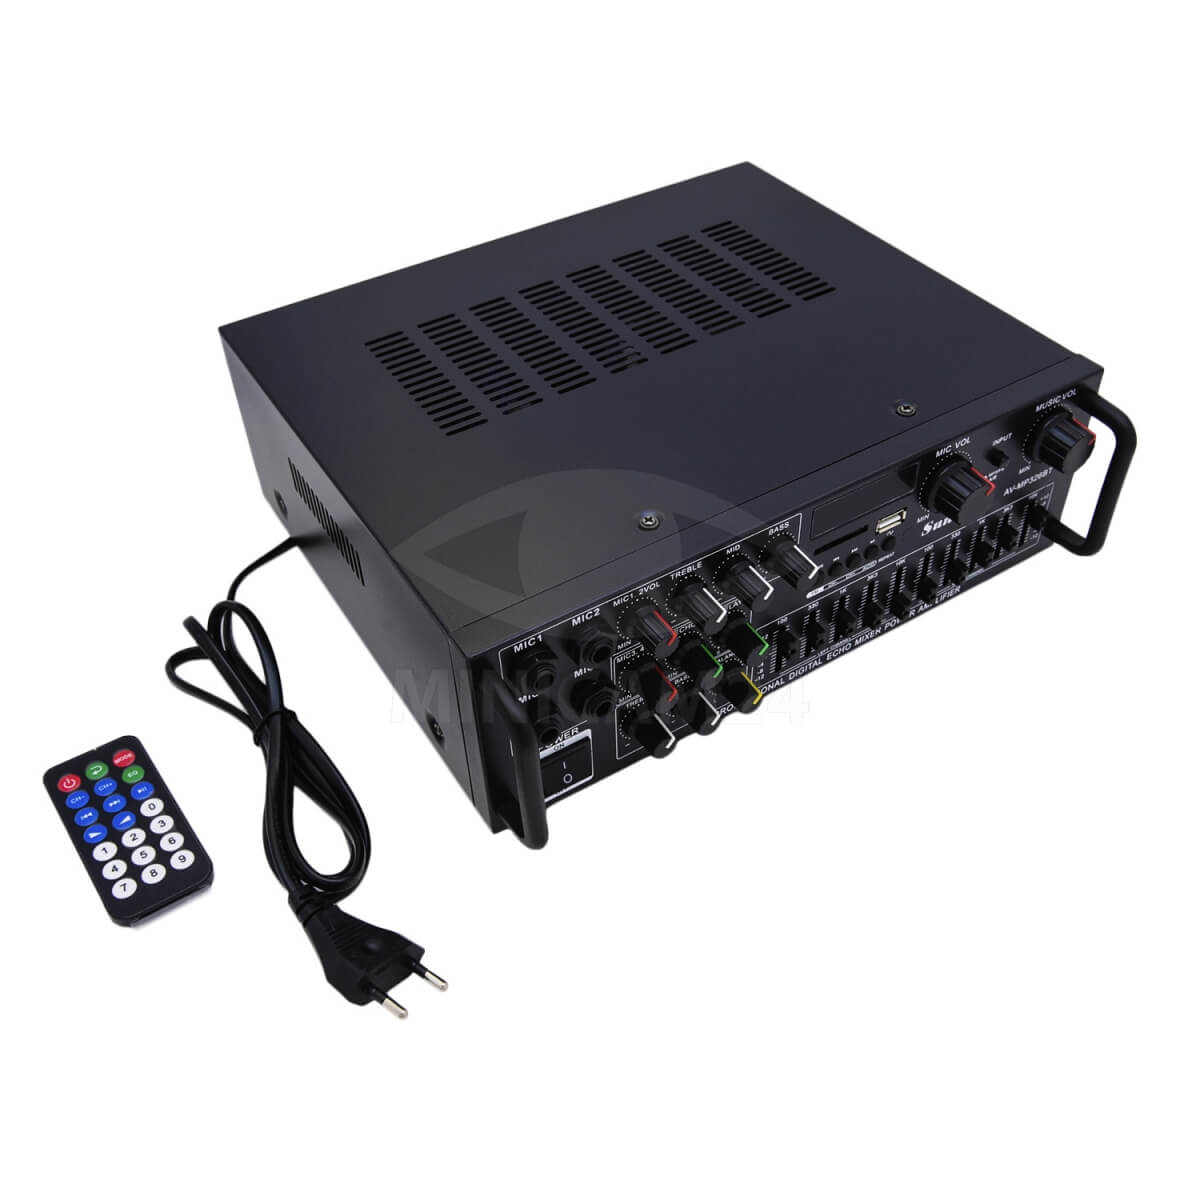 Unboxing Power Amplifier fleco av - mp326bt fitur Bluetooth Karaoke Sunbuck. Sunbuck av-mp326bt схема плат. Sunbuck av-mp326bt цена. Электронные схемы на бумаге для усилитель Sunbuck av-mp326bt.